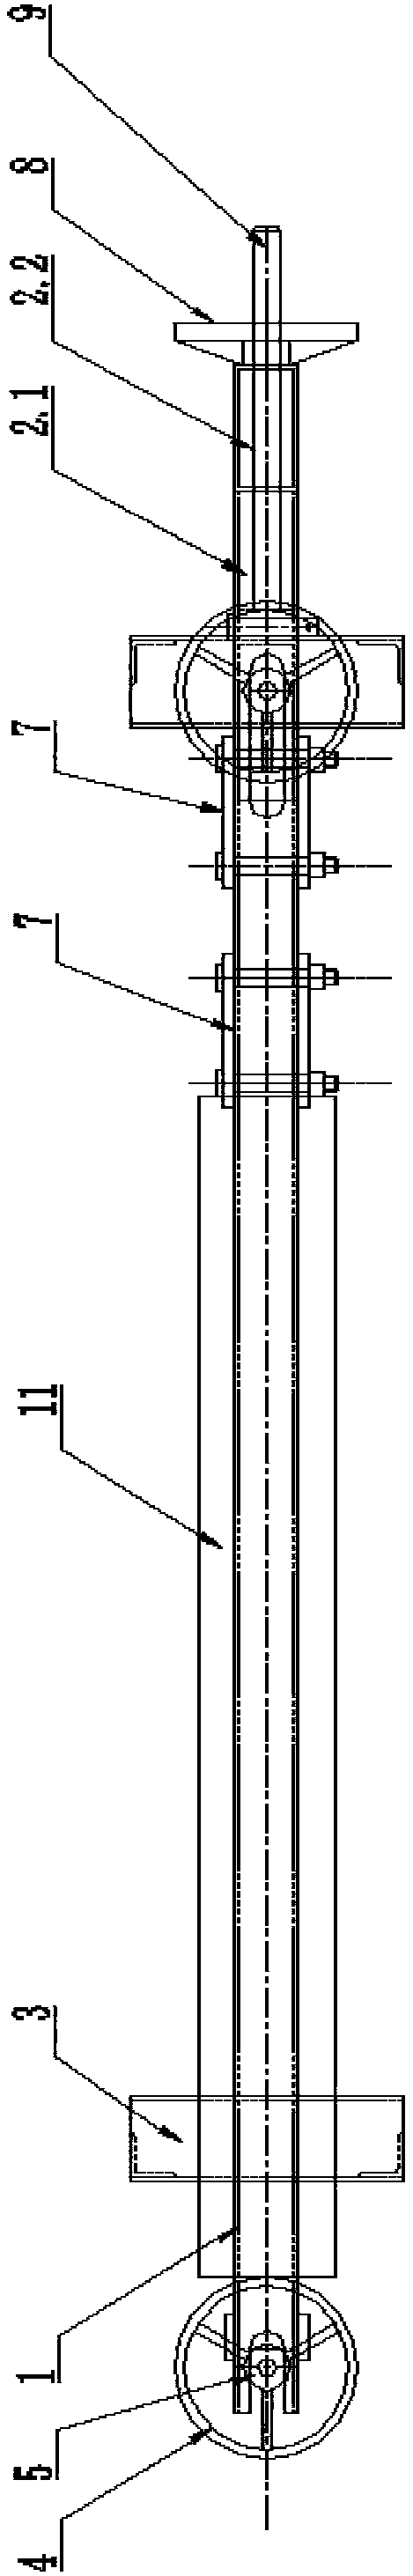 Transformer paper tube bonding device